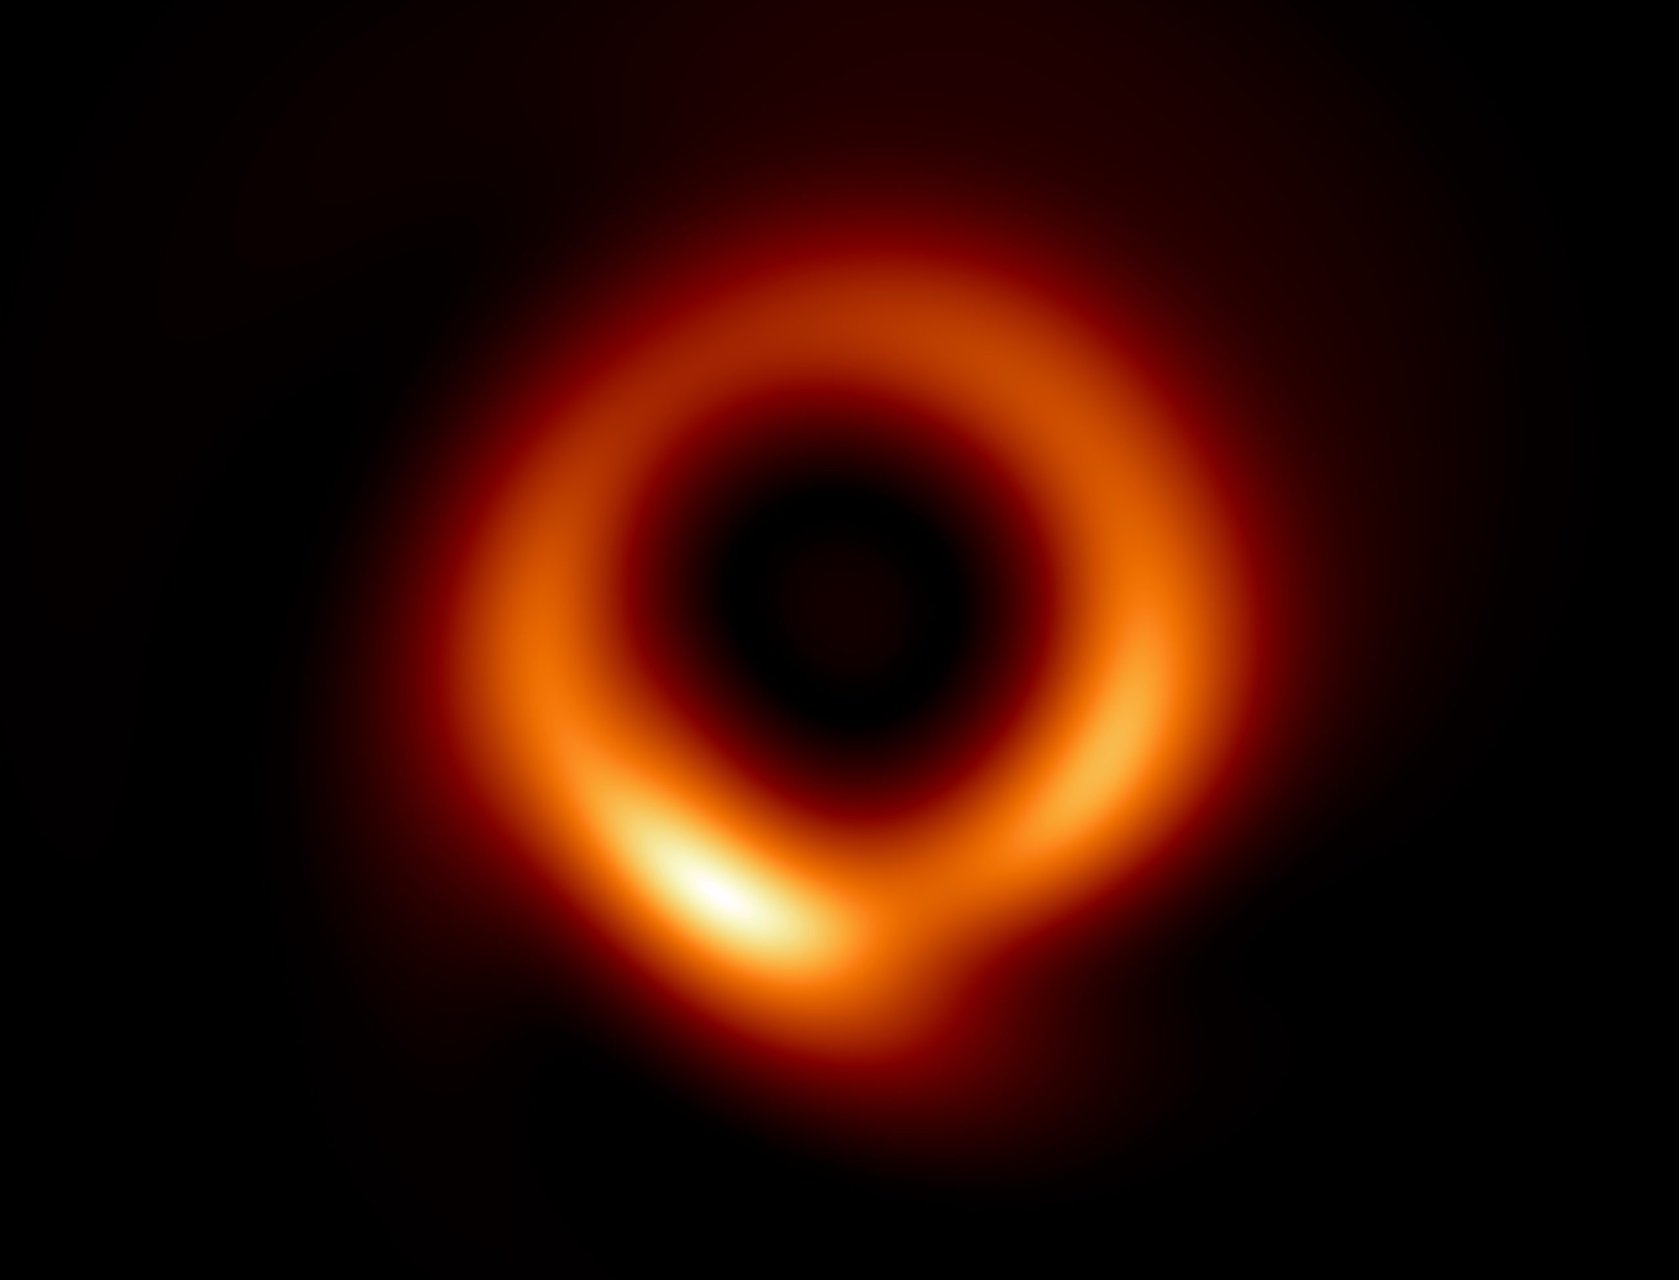 Размытый пончик с огненным кольцом на более четком изображении черной дыры.